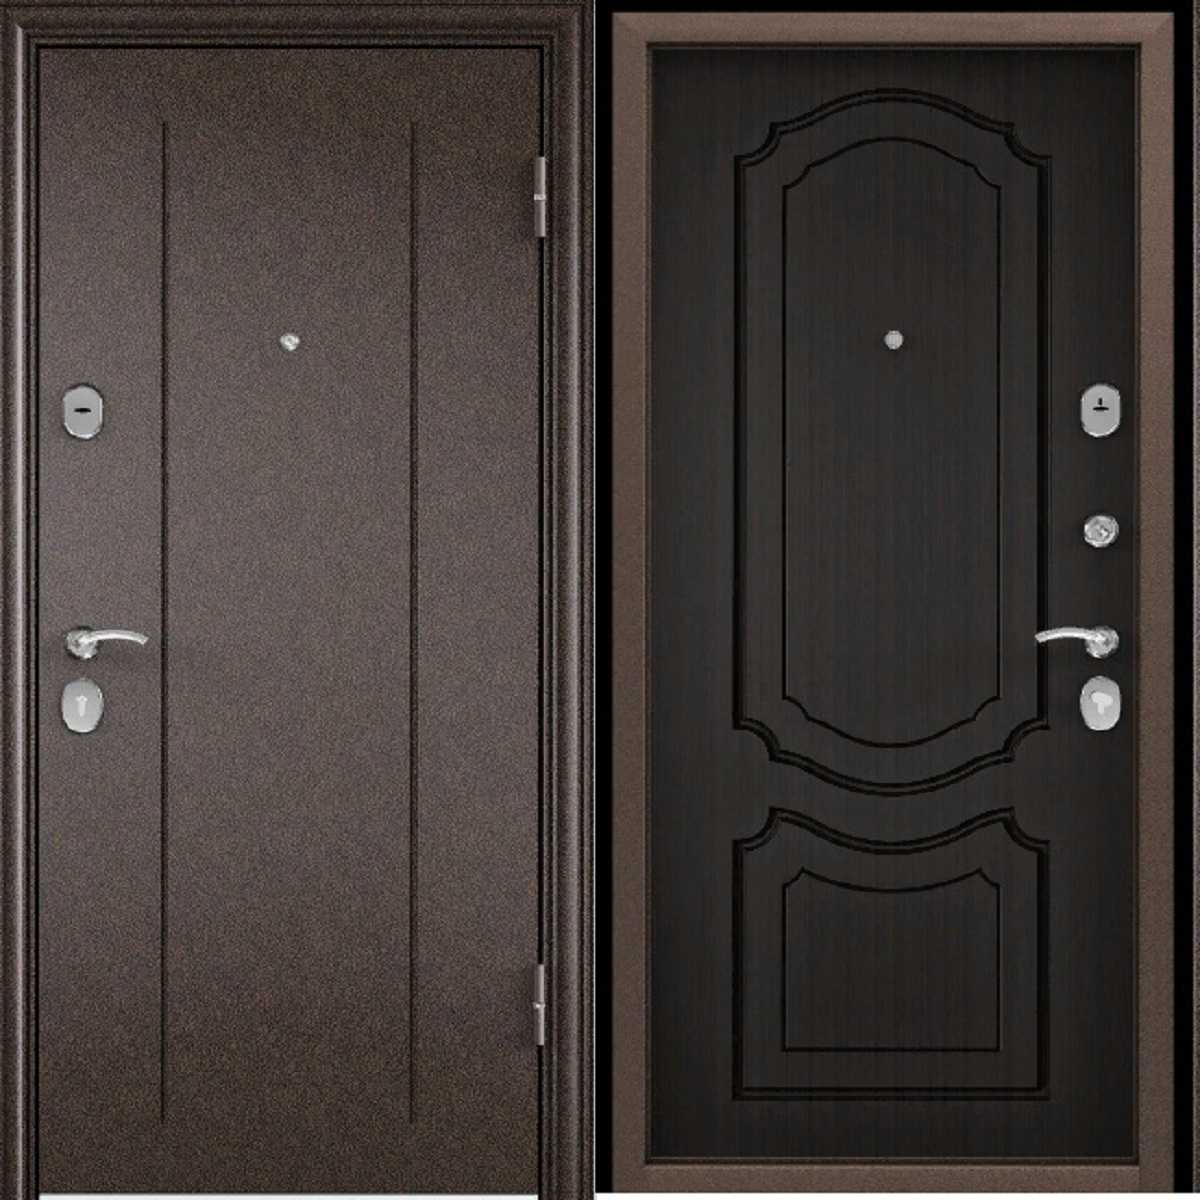 Какую входную дверь поставить? выбираем конструкцию и производителя